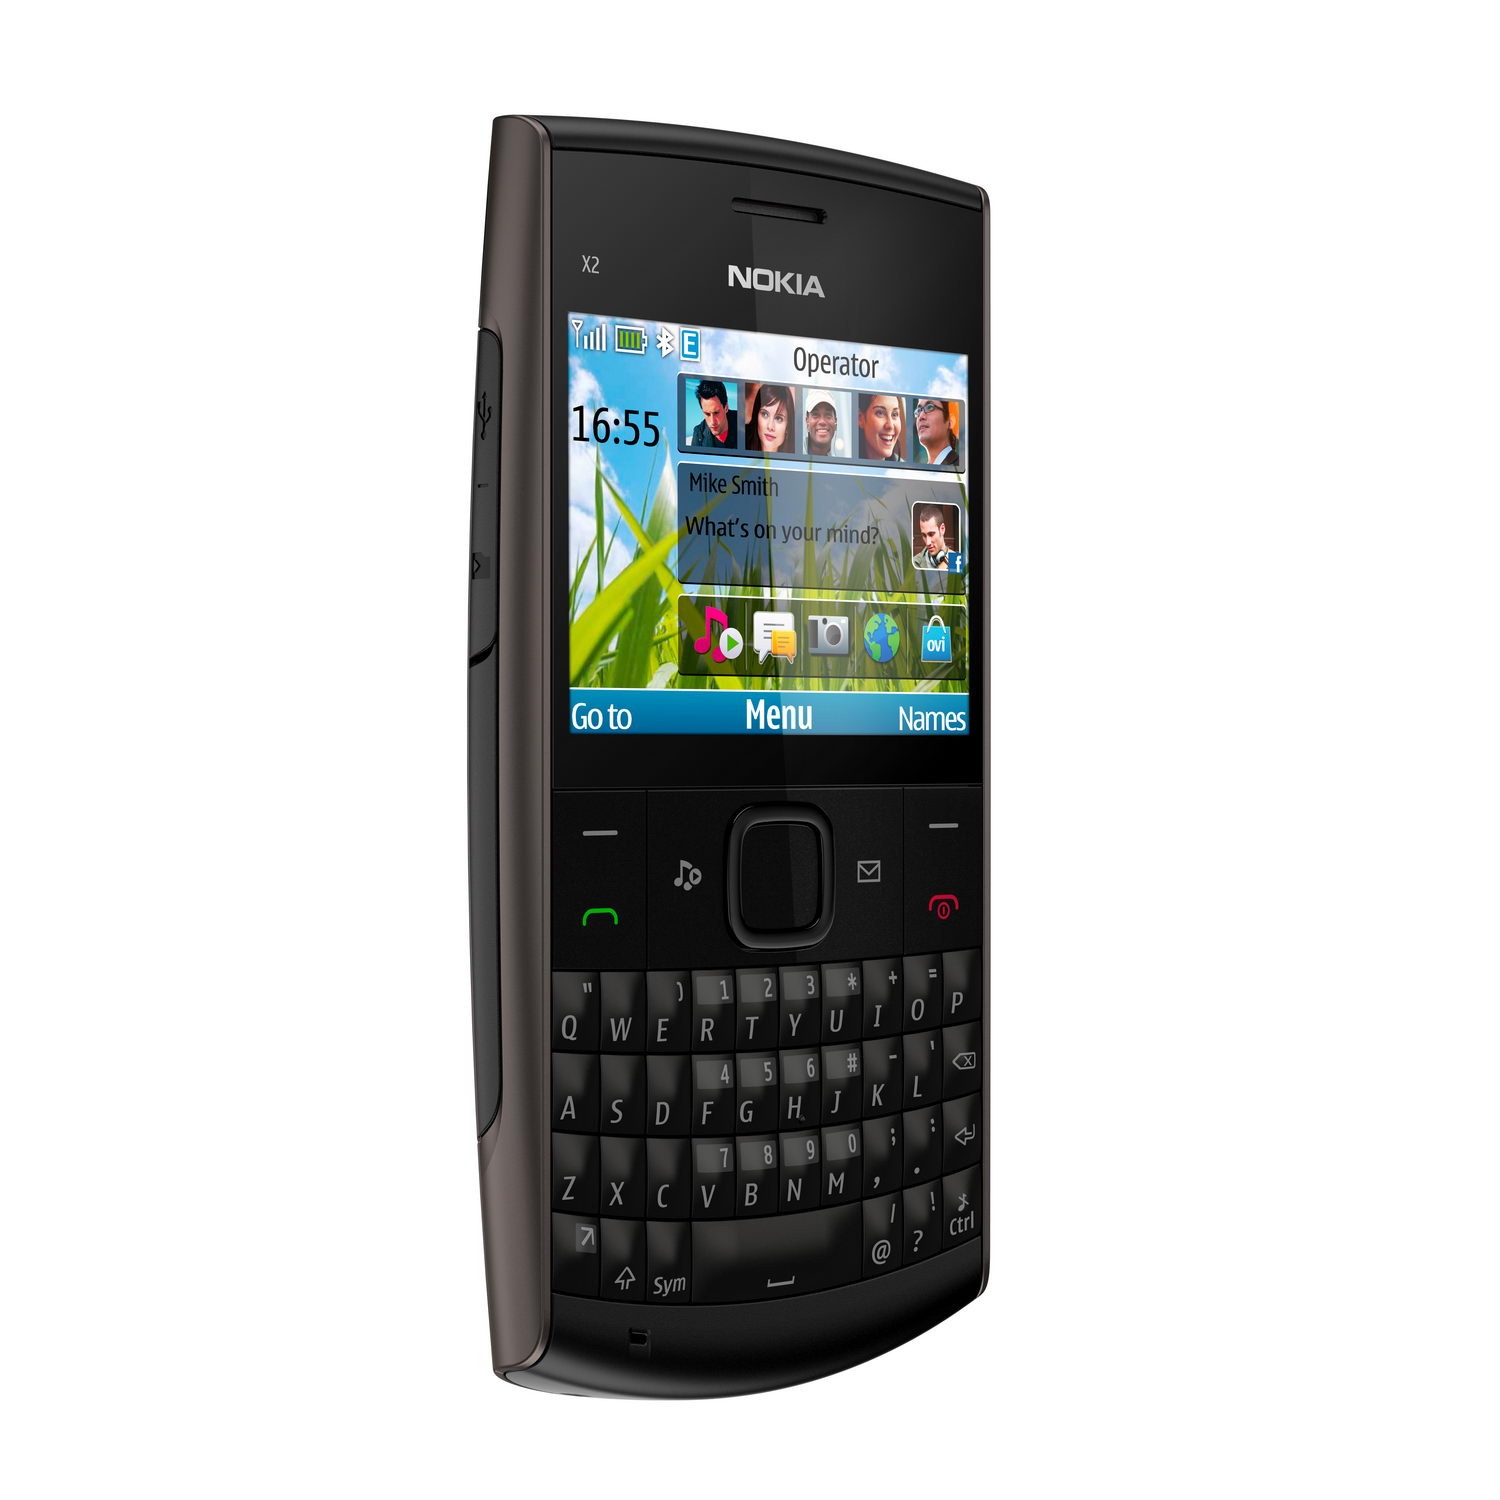 New Nokia X2 | nokia x2 review, nokia x2 01 qwerty phone ...